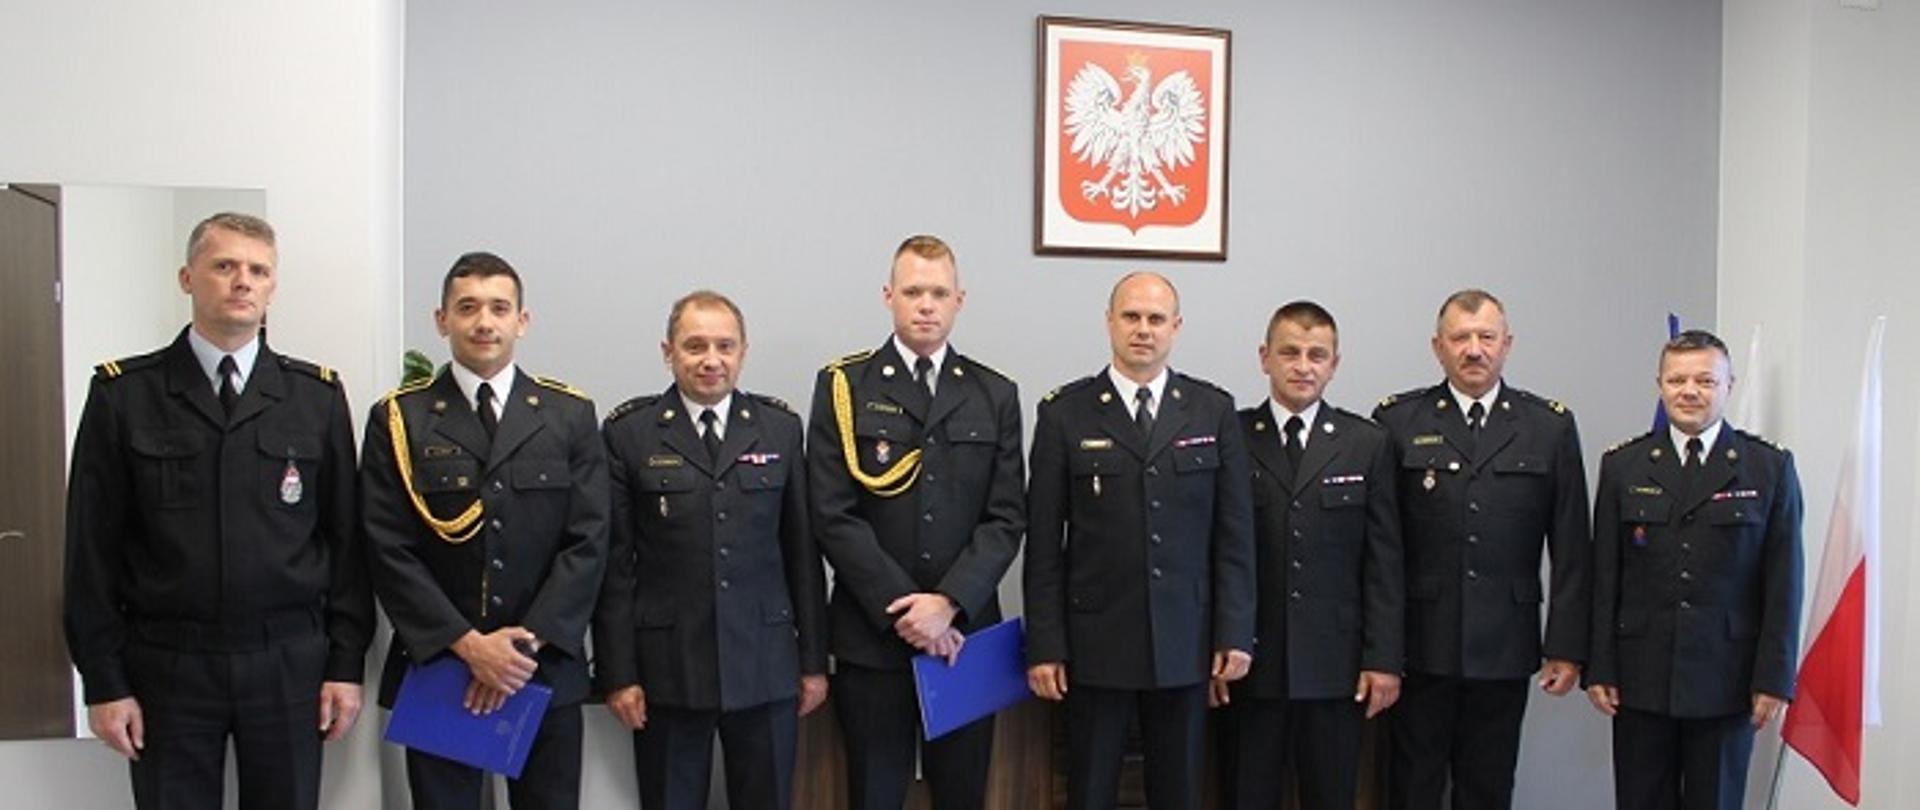 Wspólne zdjęcie funkcjonariuszy podczas uroczystości, która odbyła się w sali odpraw komendy powiatowej Państwowej Straży Pożarnej w Mielcu.